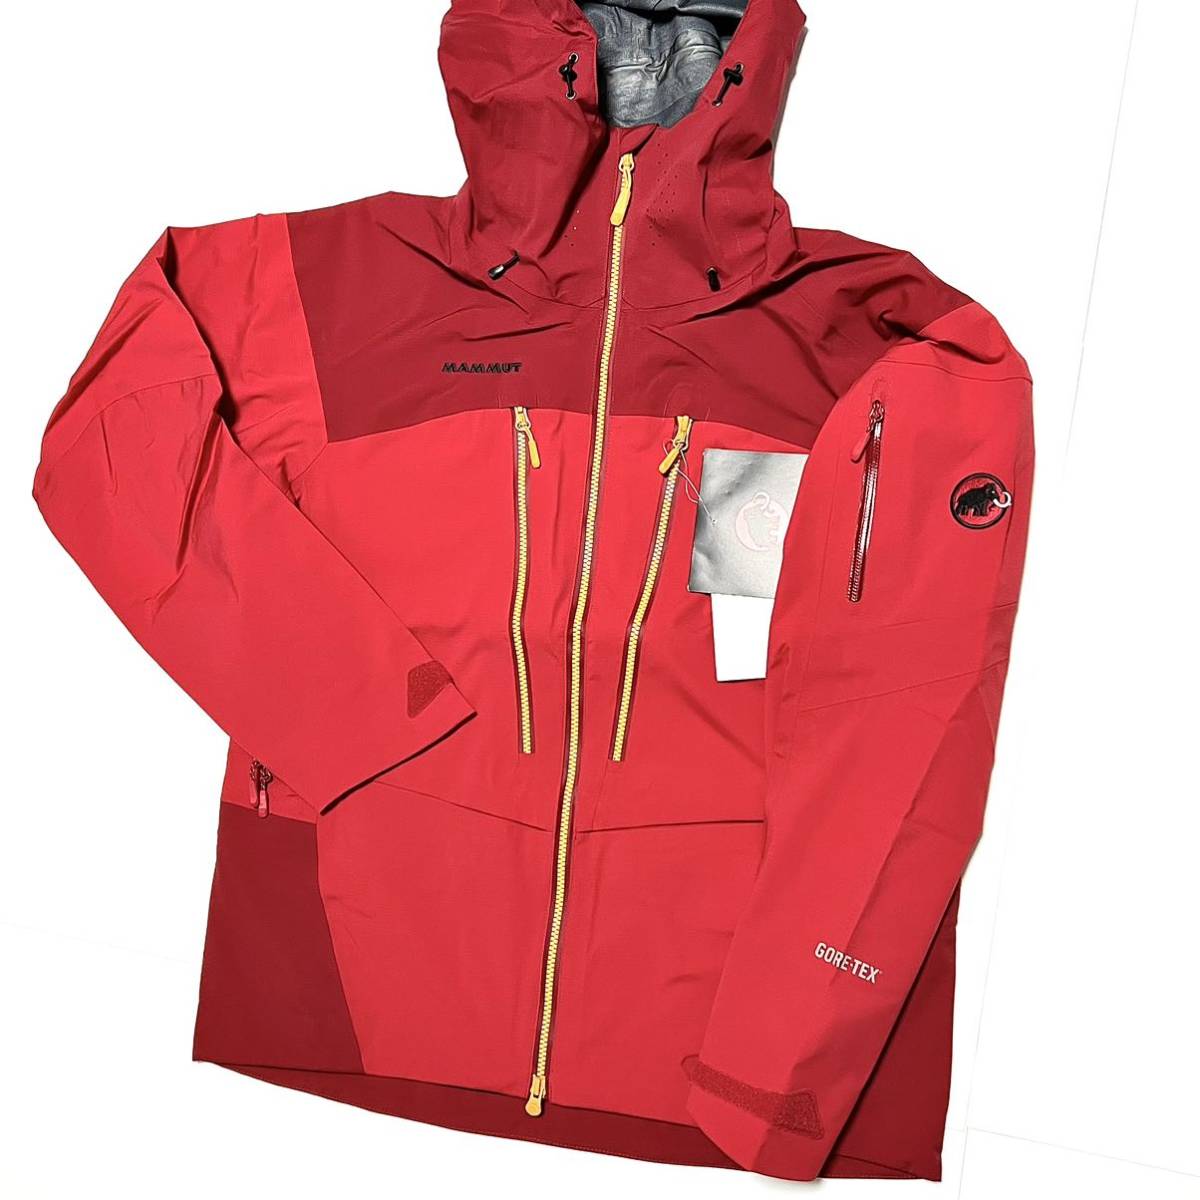 XL 新品 マムート 防水 ゴアテックス アイスフォール ジャケット 雪 GORETEX ハイキング スキー スノボー スノーボード ゴア GORE 登山 赤